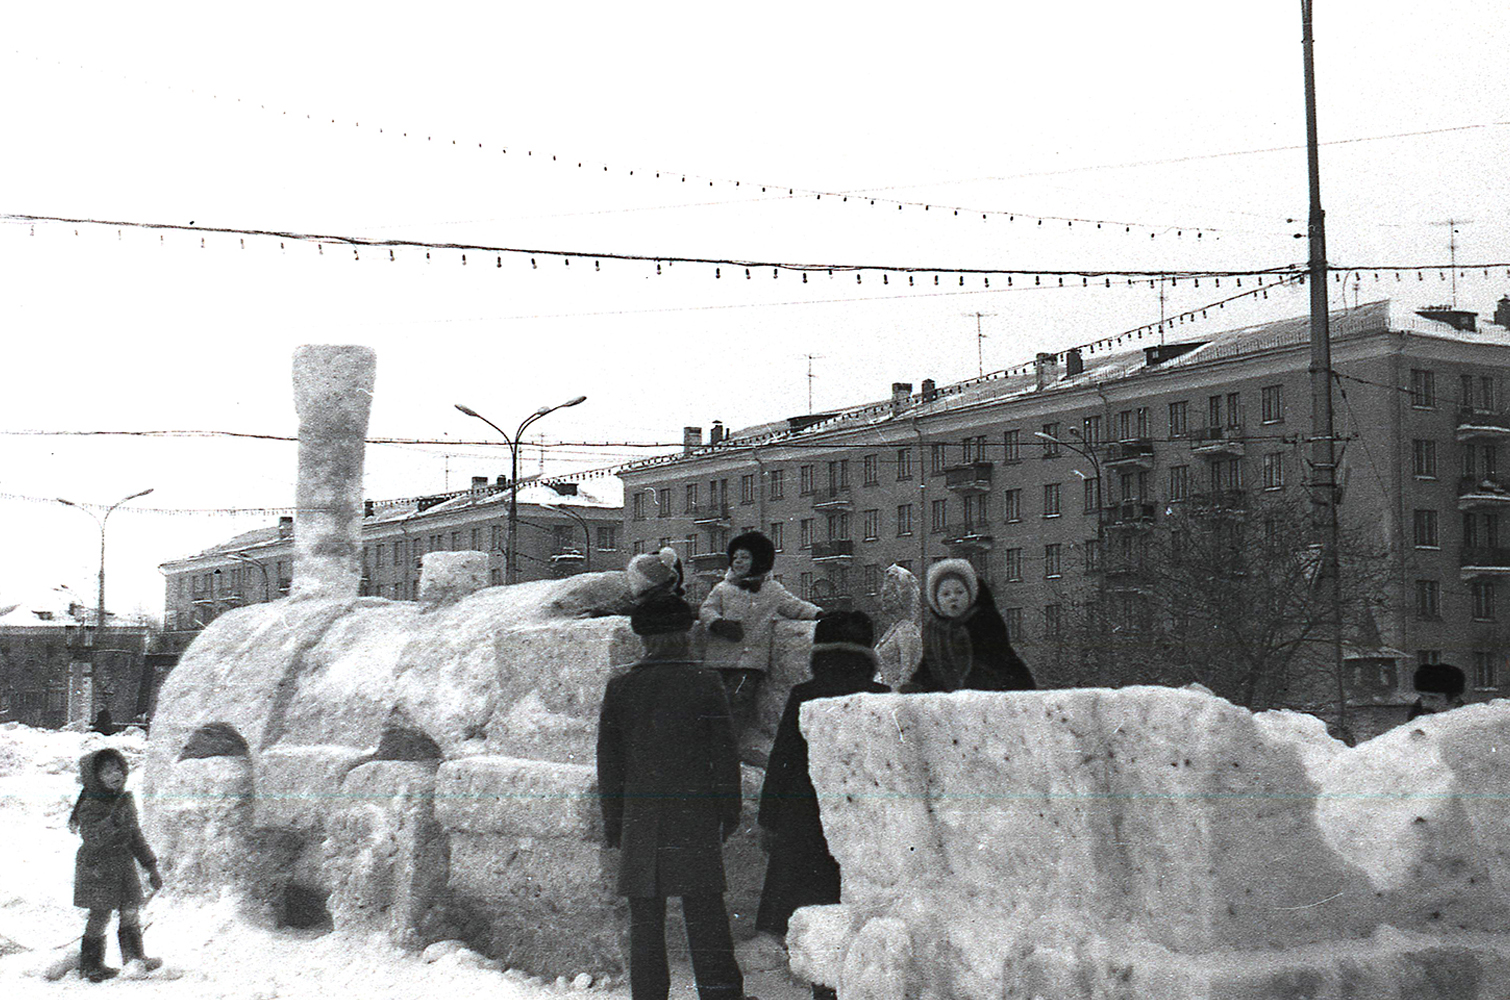 Дети на снежной скульптуре паровоза на Театральной площади. 1983 год. (НТГИА. Коллекция фотодокументов.Оп.1Н.Д.356)